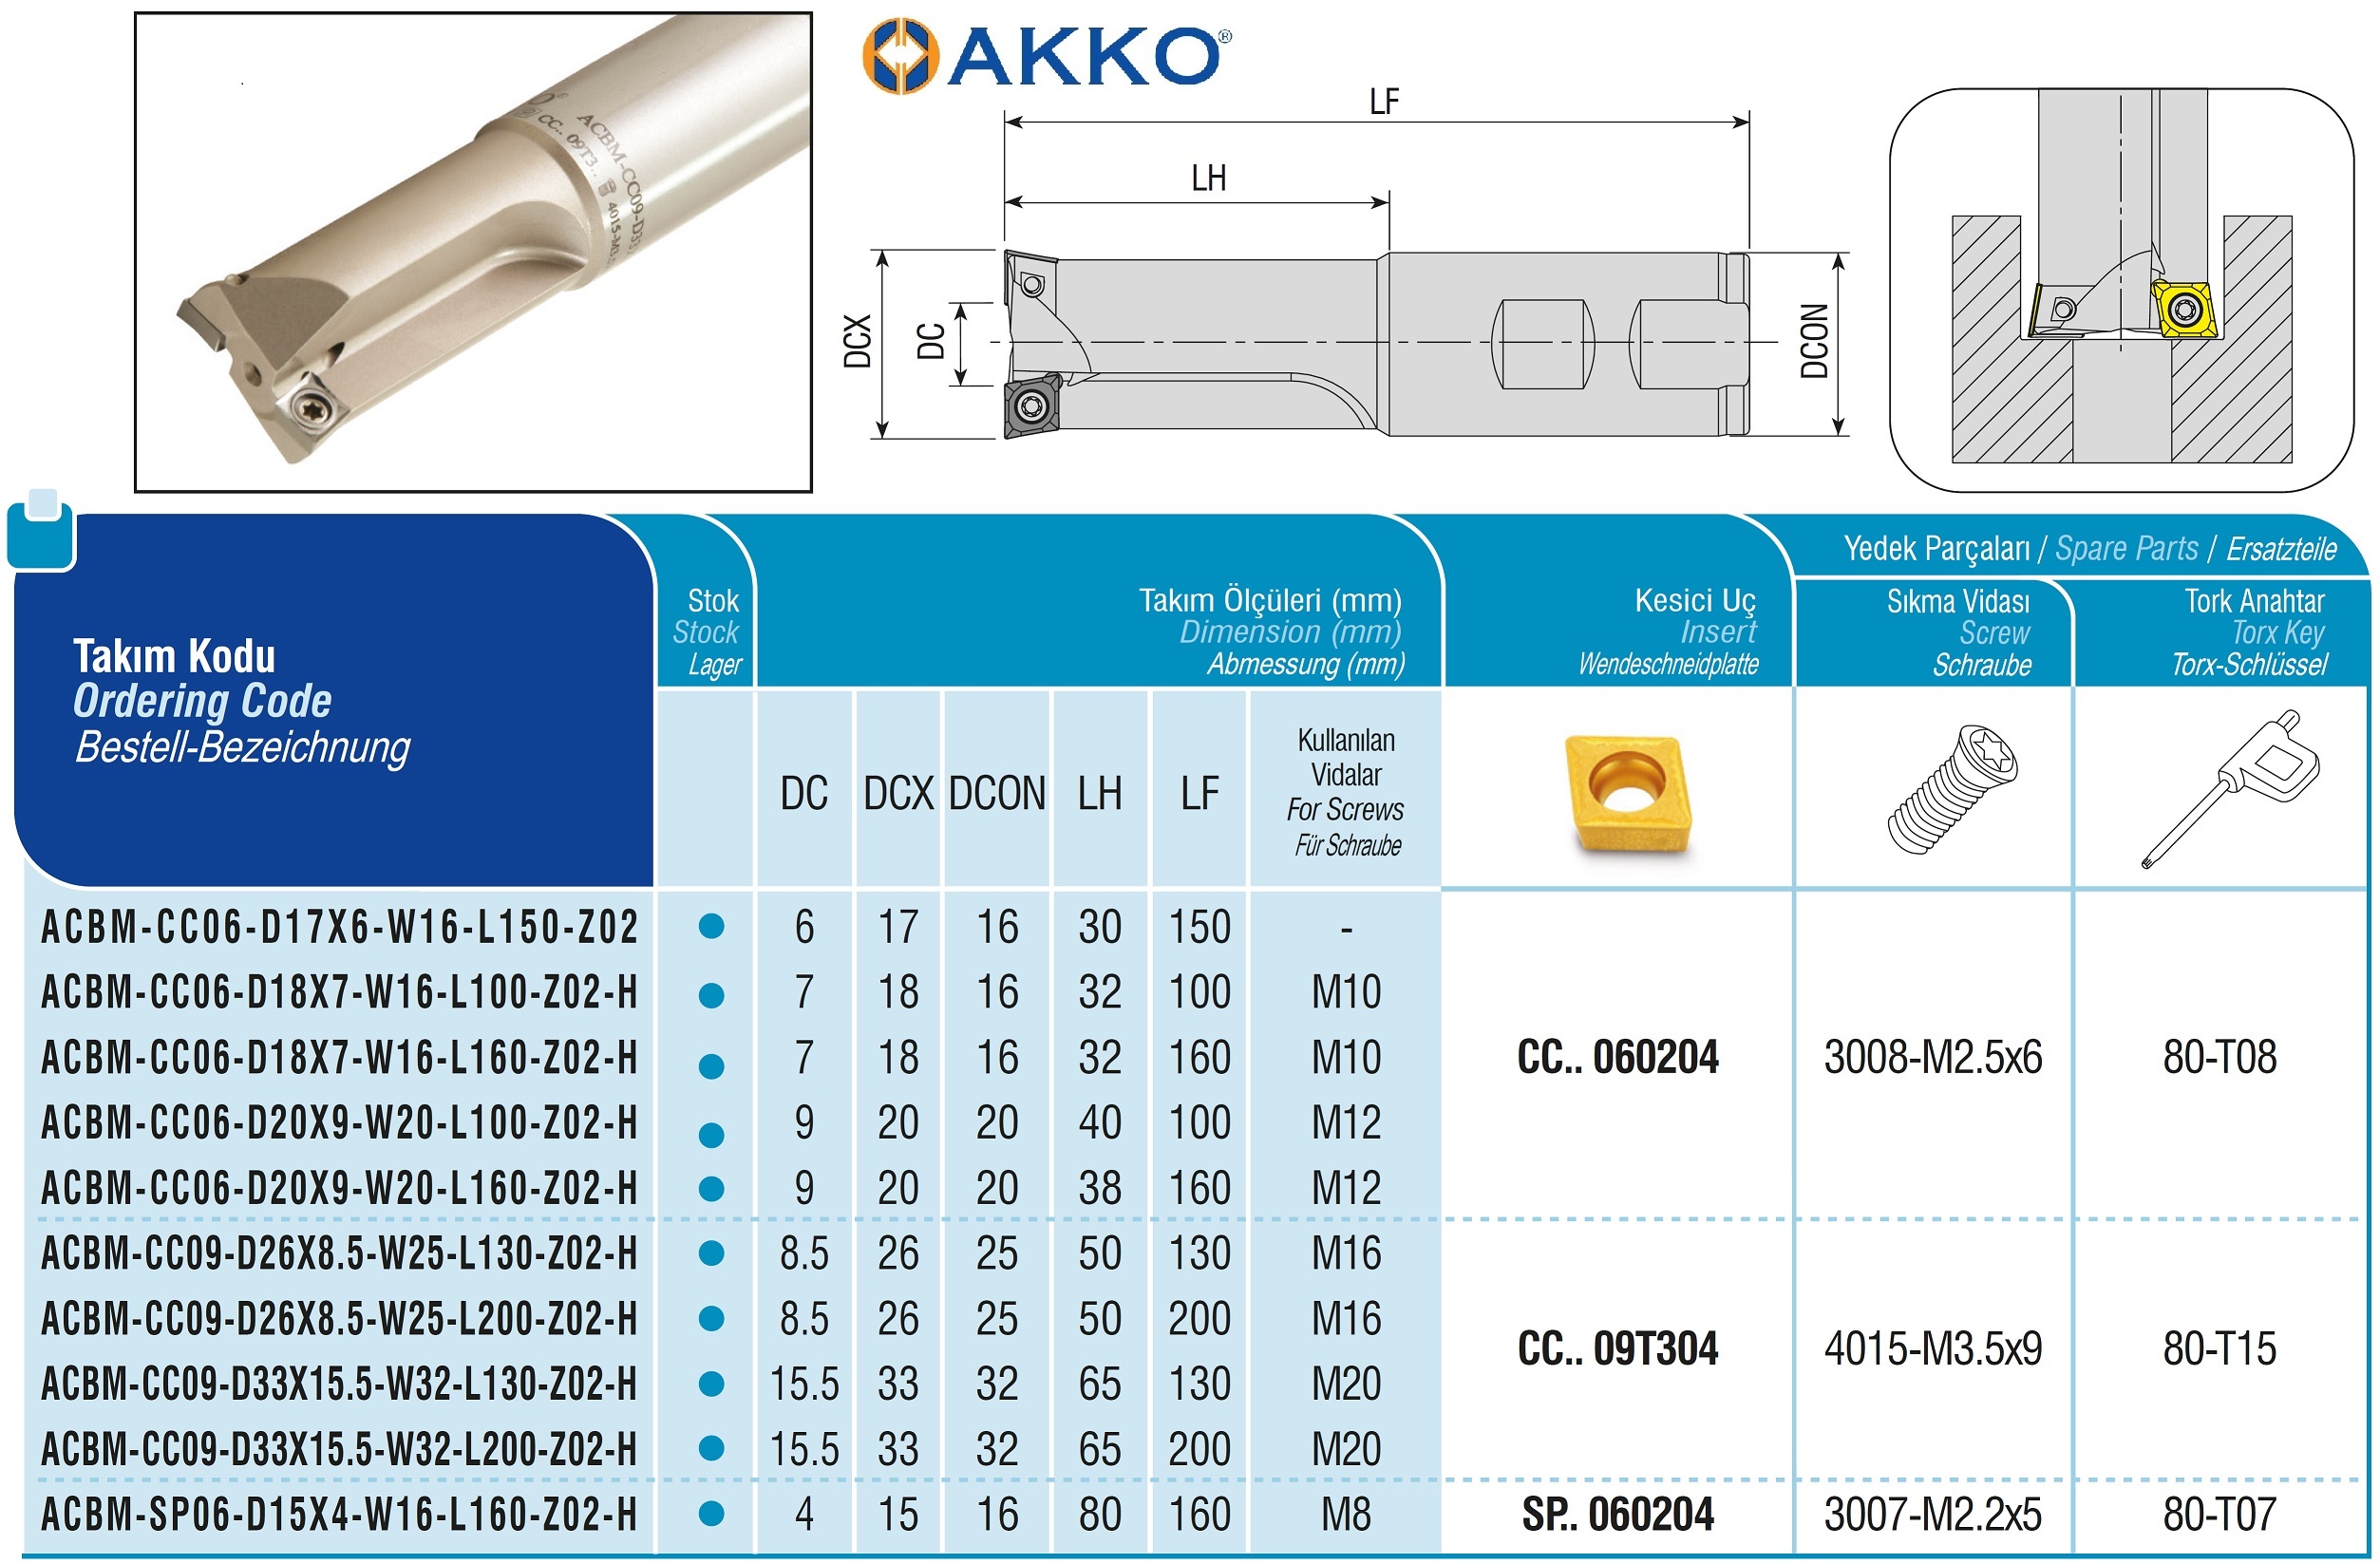 AKKO-Senkfräser, kompatibel mit ISO CC.. 09T304
ø 30 mm, Z=2, mit Innenkühlung